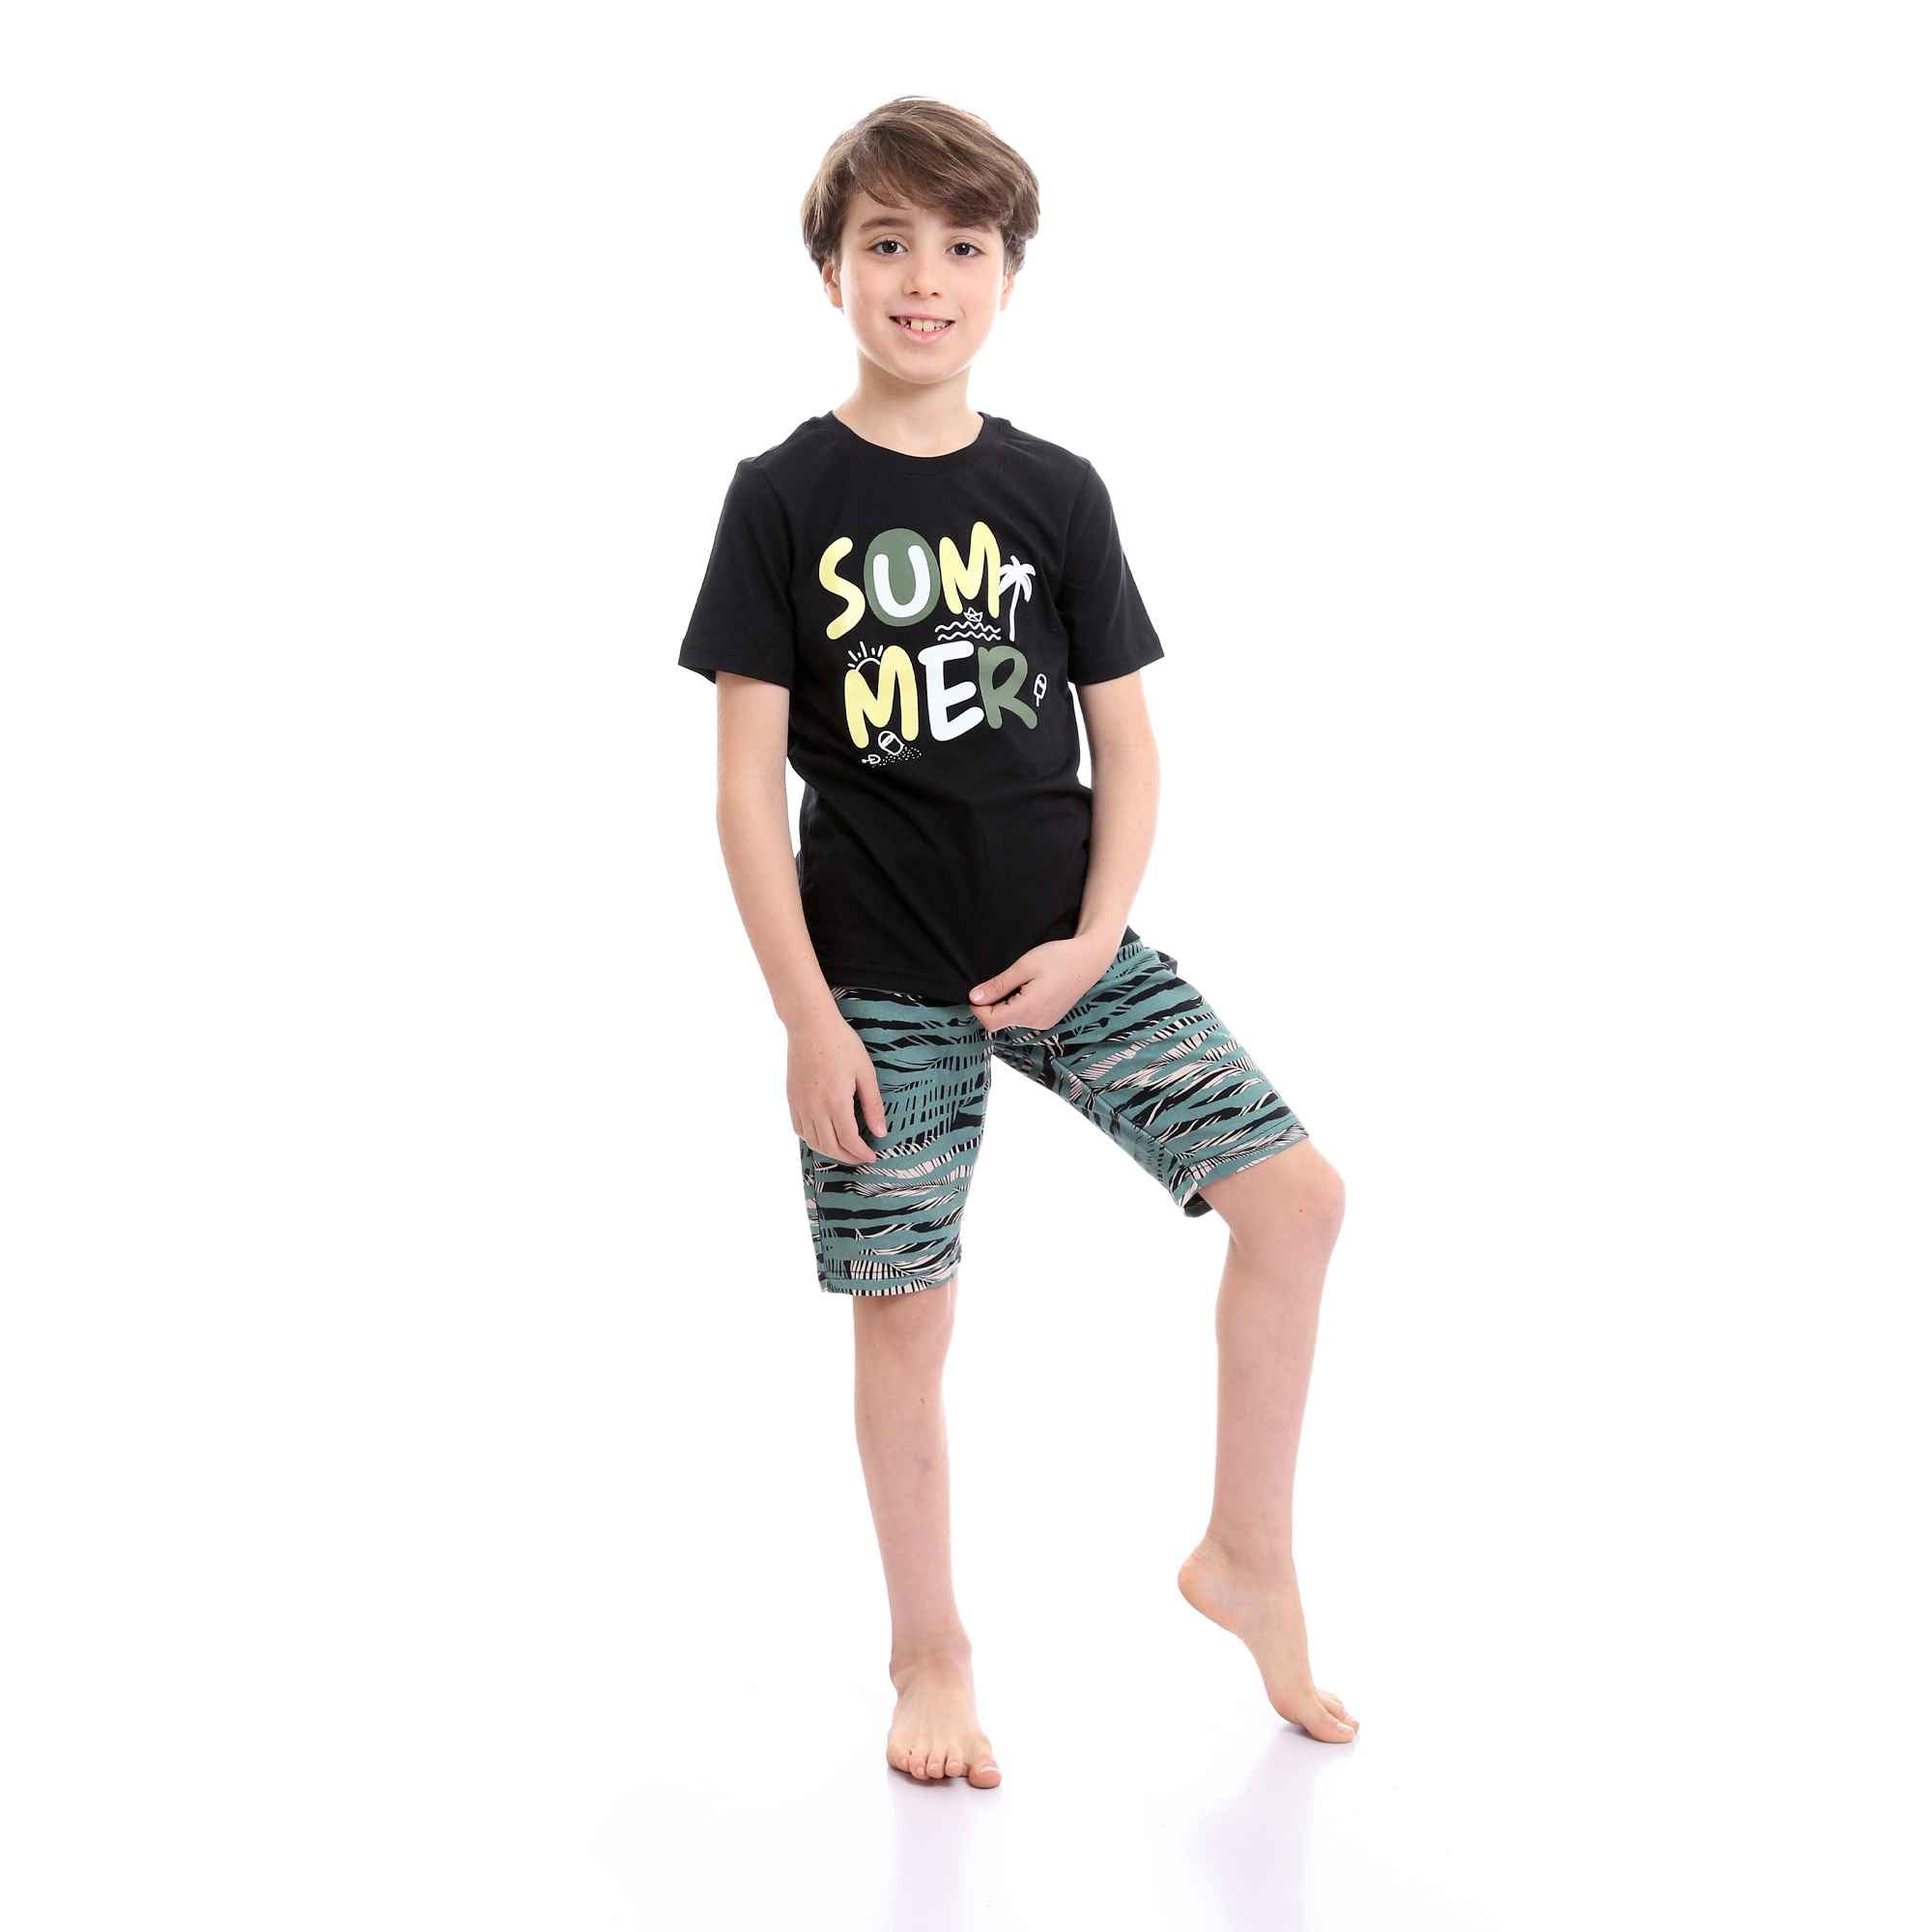 Boys Printed Colorful Summer & Shorts Pajama Set - Black & Mint Green